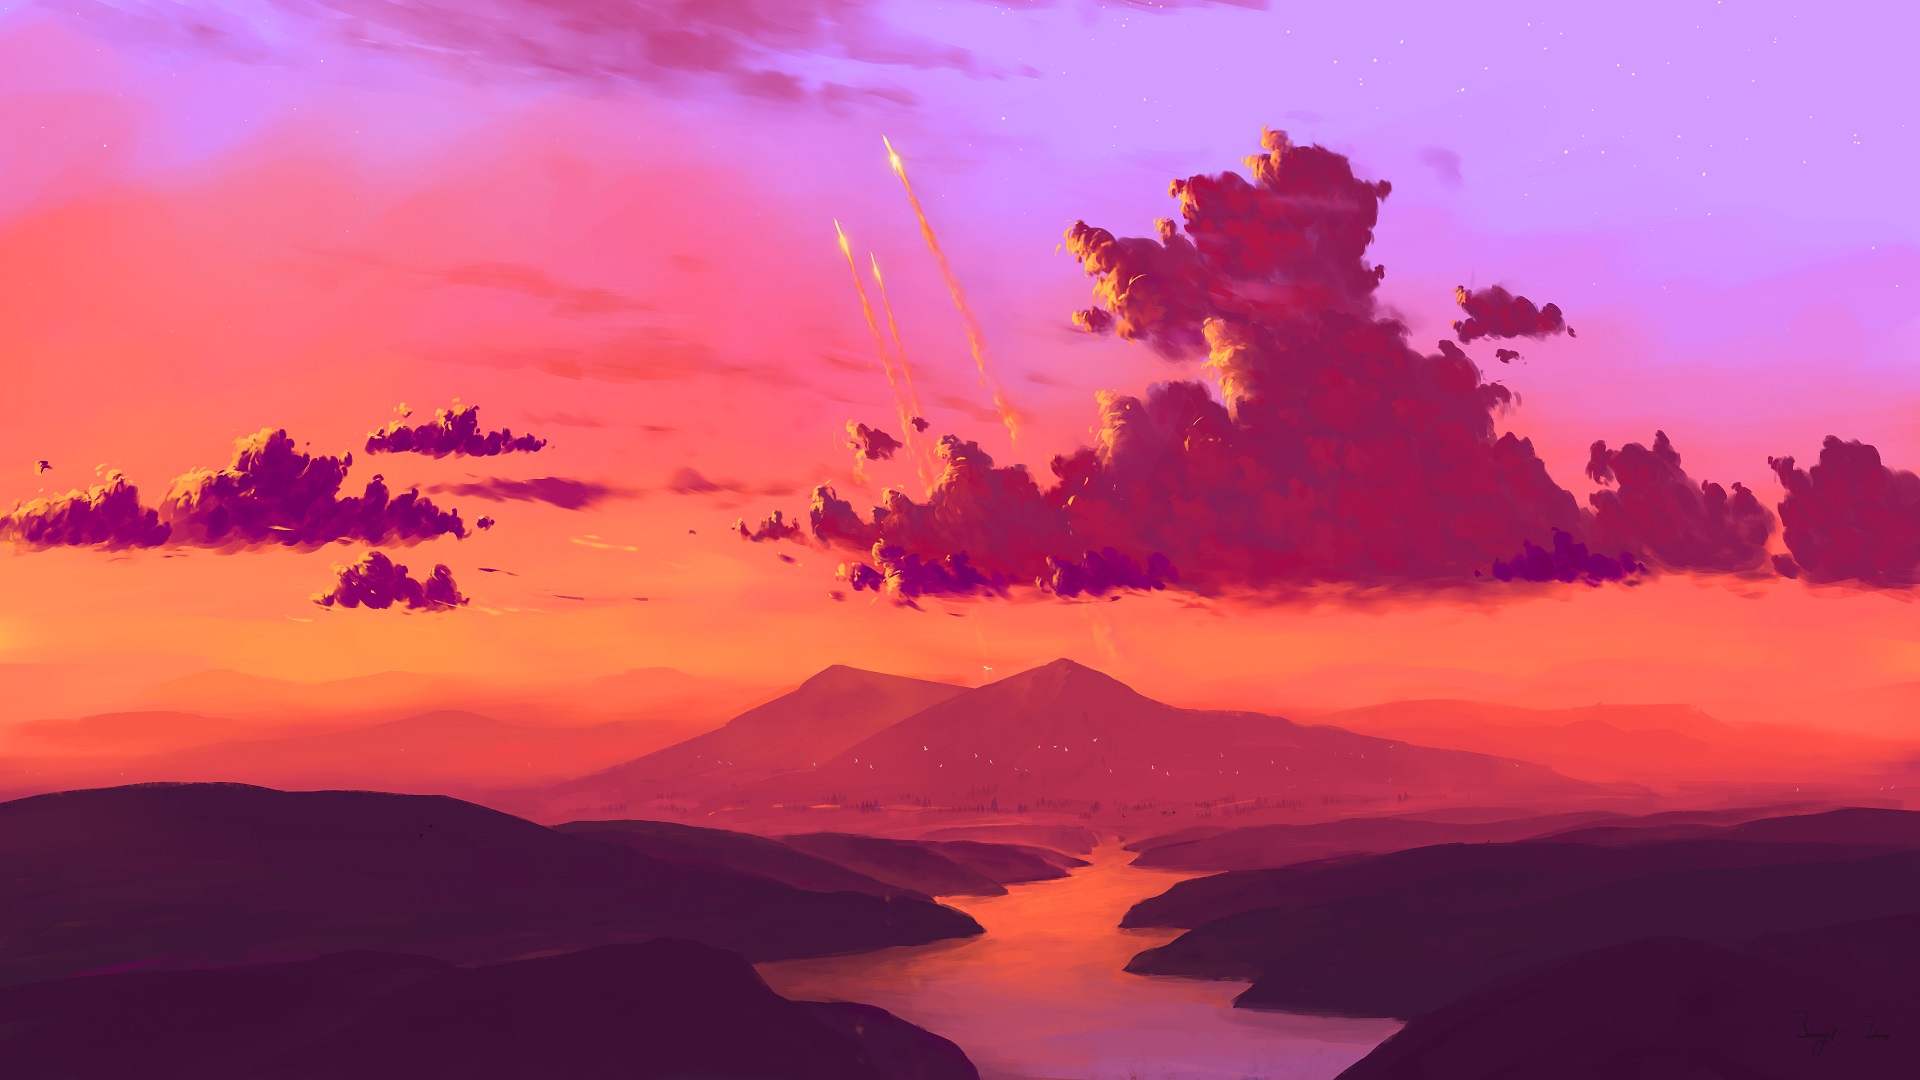 BisBiswas Landscape Digital Art Rocket Sky Clouds Science Fiction Colorful Artwork Nature River Sunl 1920x1080